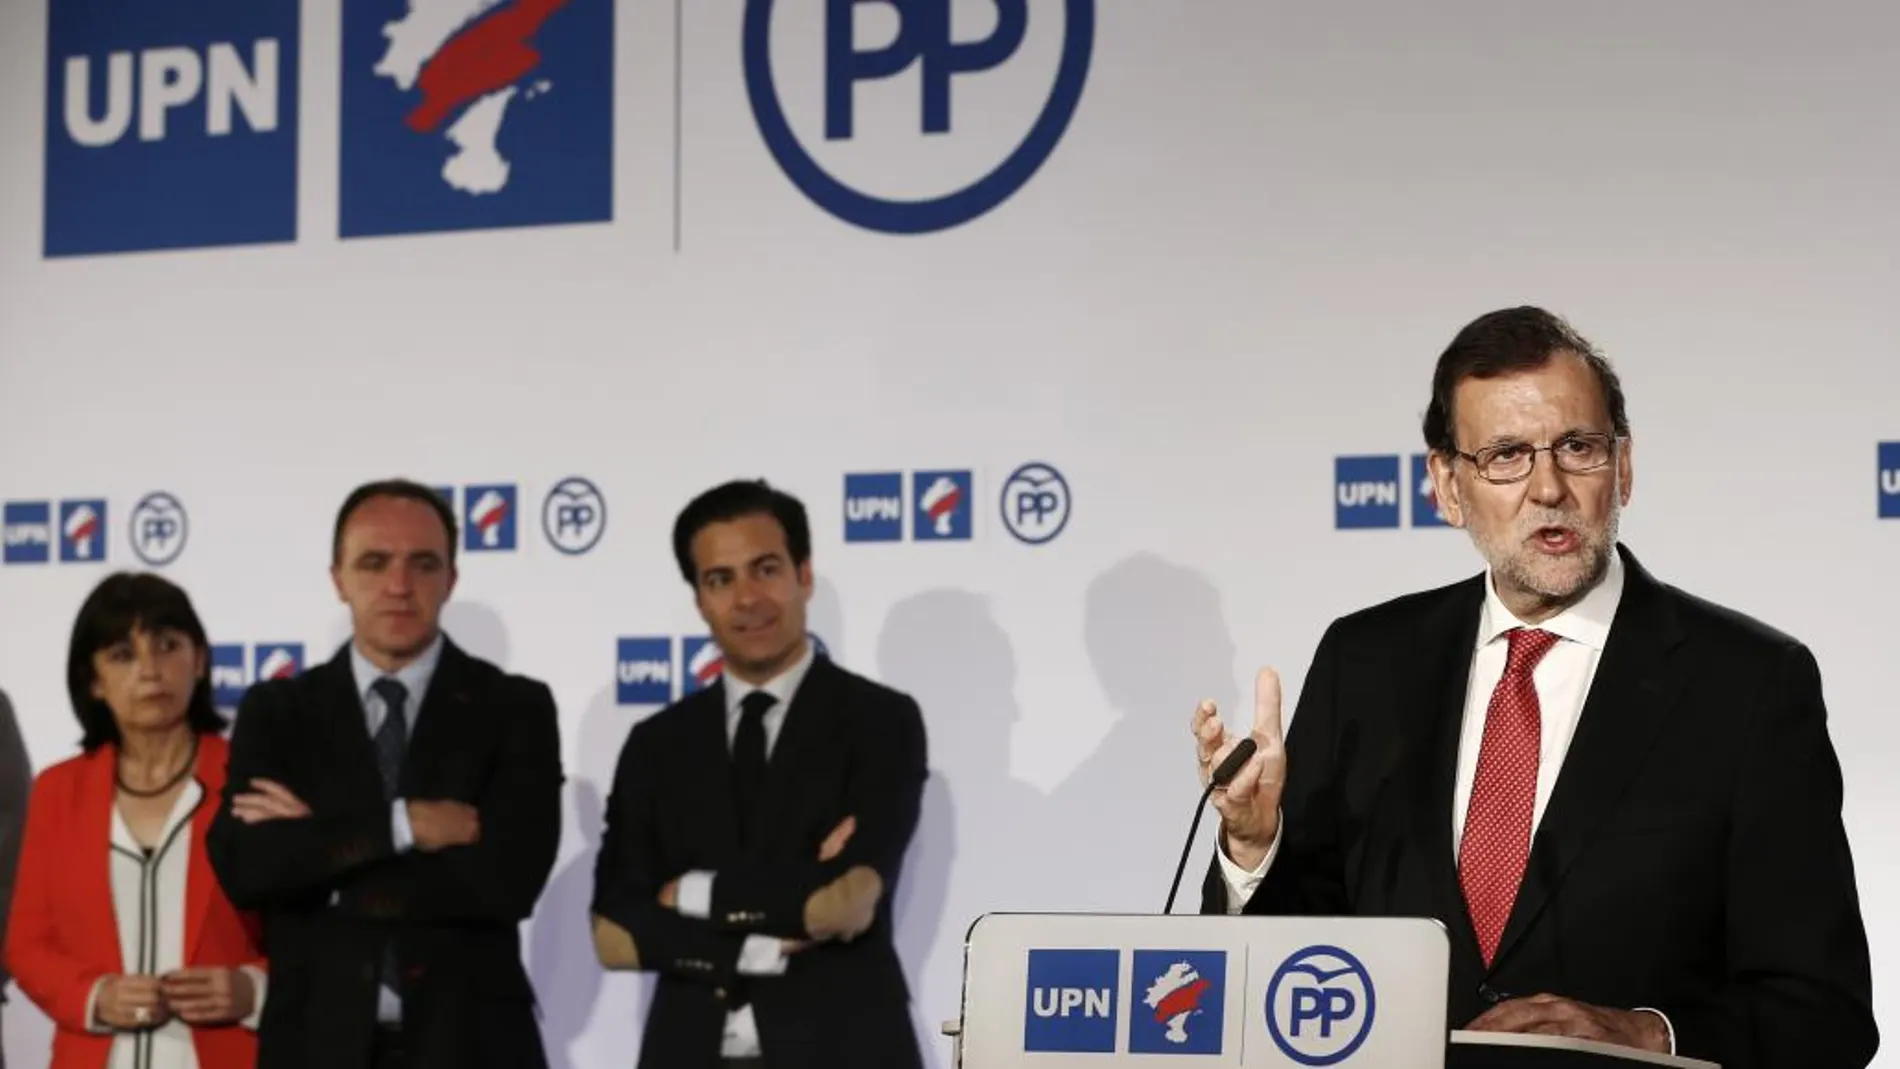 Mariano Rajoy durante su intervención tras la firma del acuerdo de coalición con el presidente de UPN, Javier Esparza